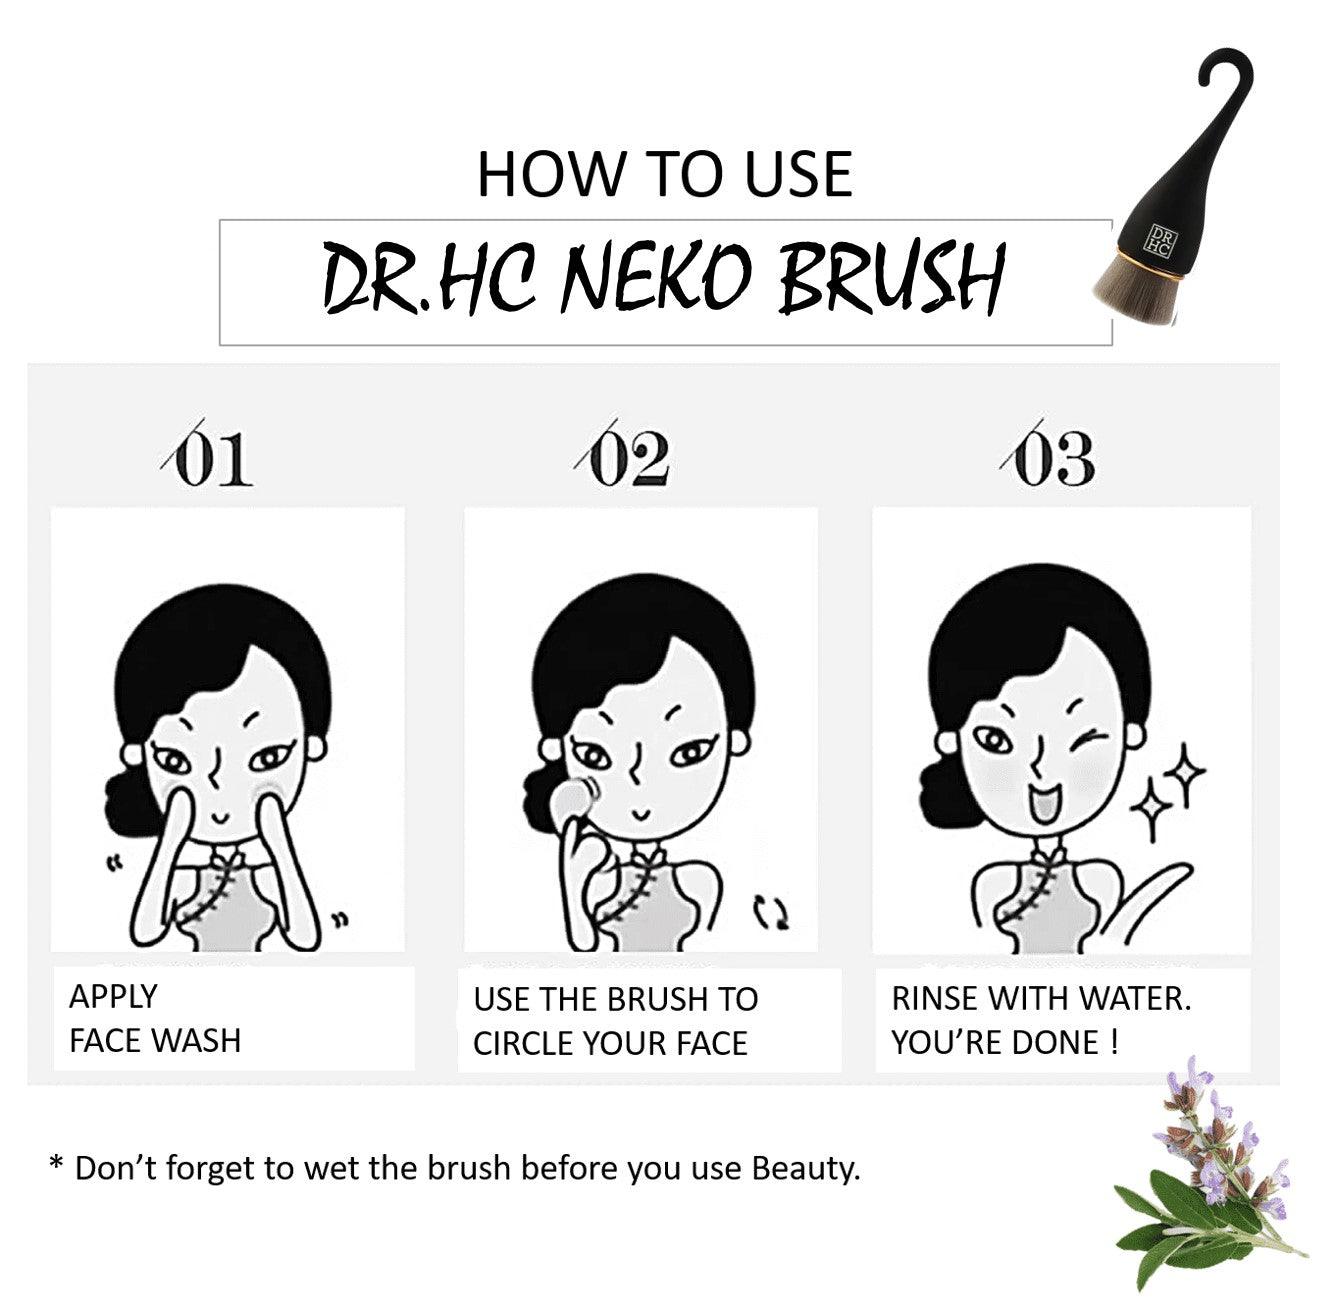 DR.HC Neko Brush - Facial Massage Cleansing Brush